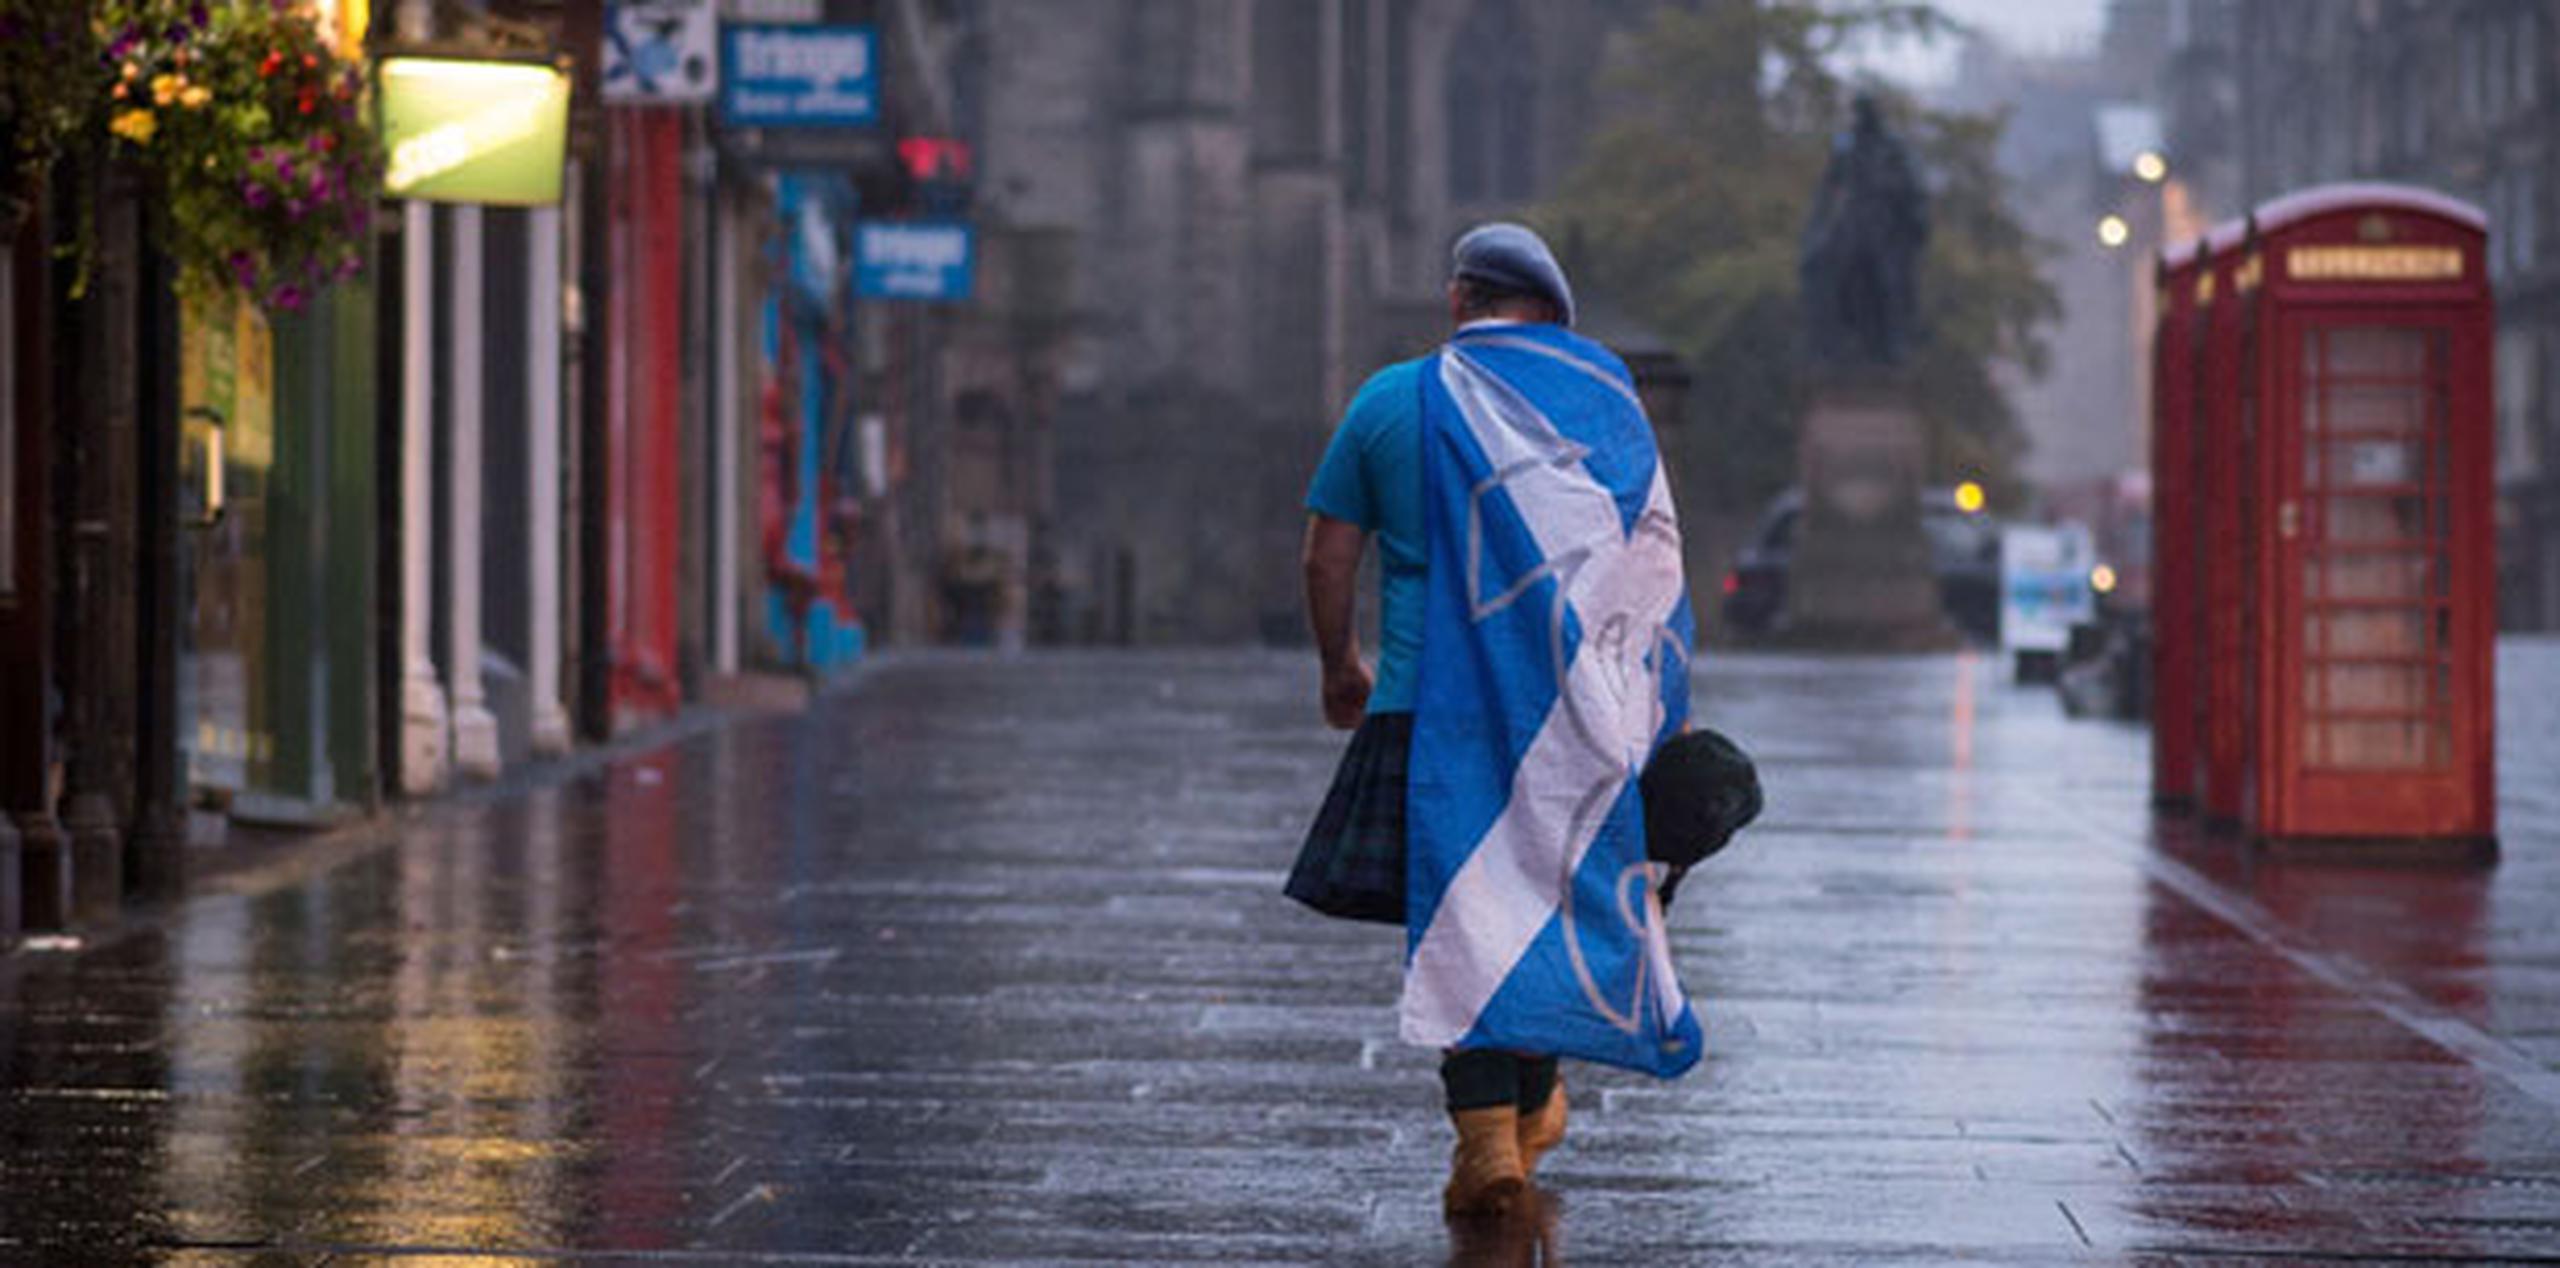 En Glasgow, la mayor ciudad escocesa y donde ganó el sí, la desazón entre los independentistas era notable. (AP)